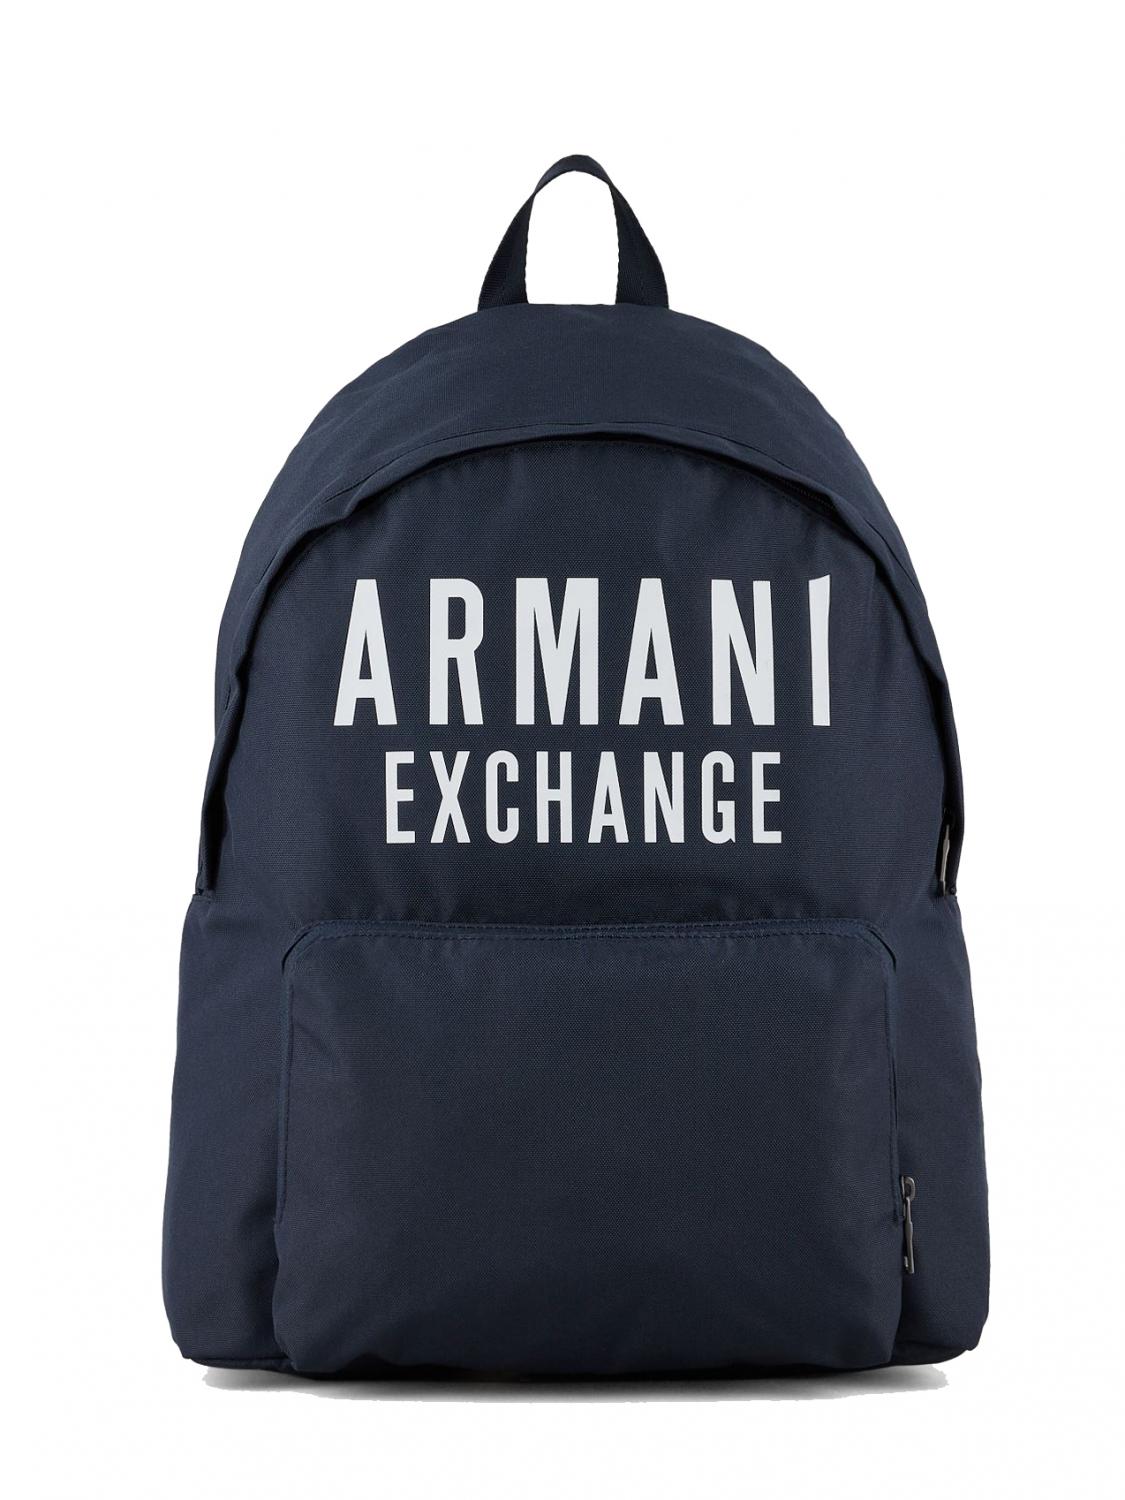 Armani Exchange Logo A Contrasto Azul - ¡Compra En Le Sac Outlet!